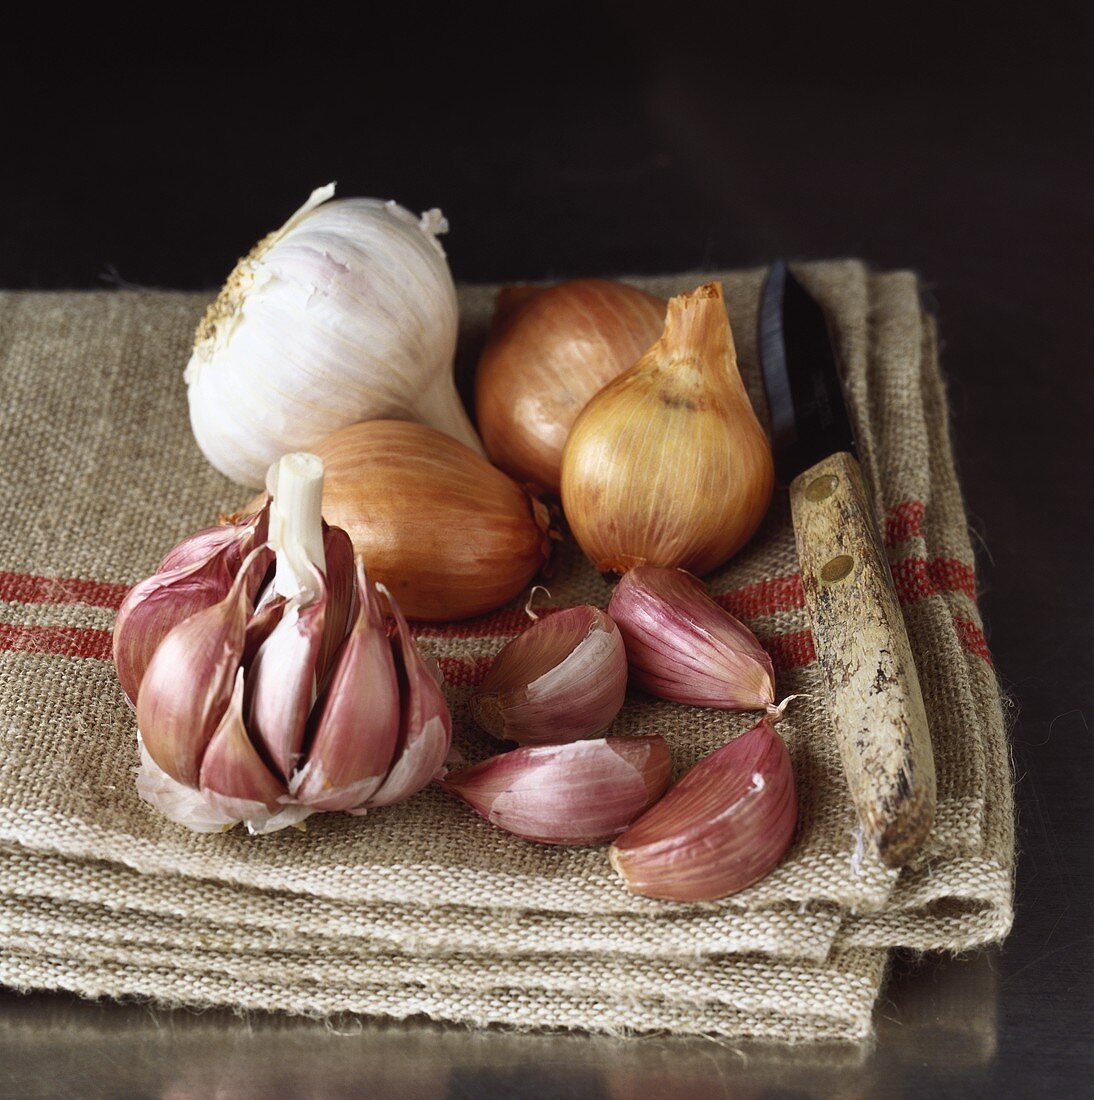 Shallots and garlic on jute